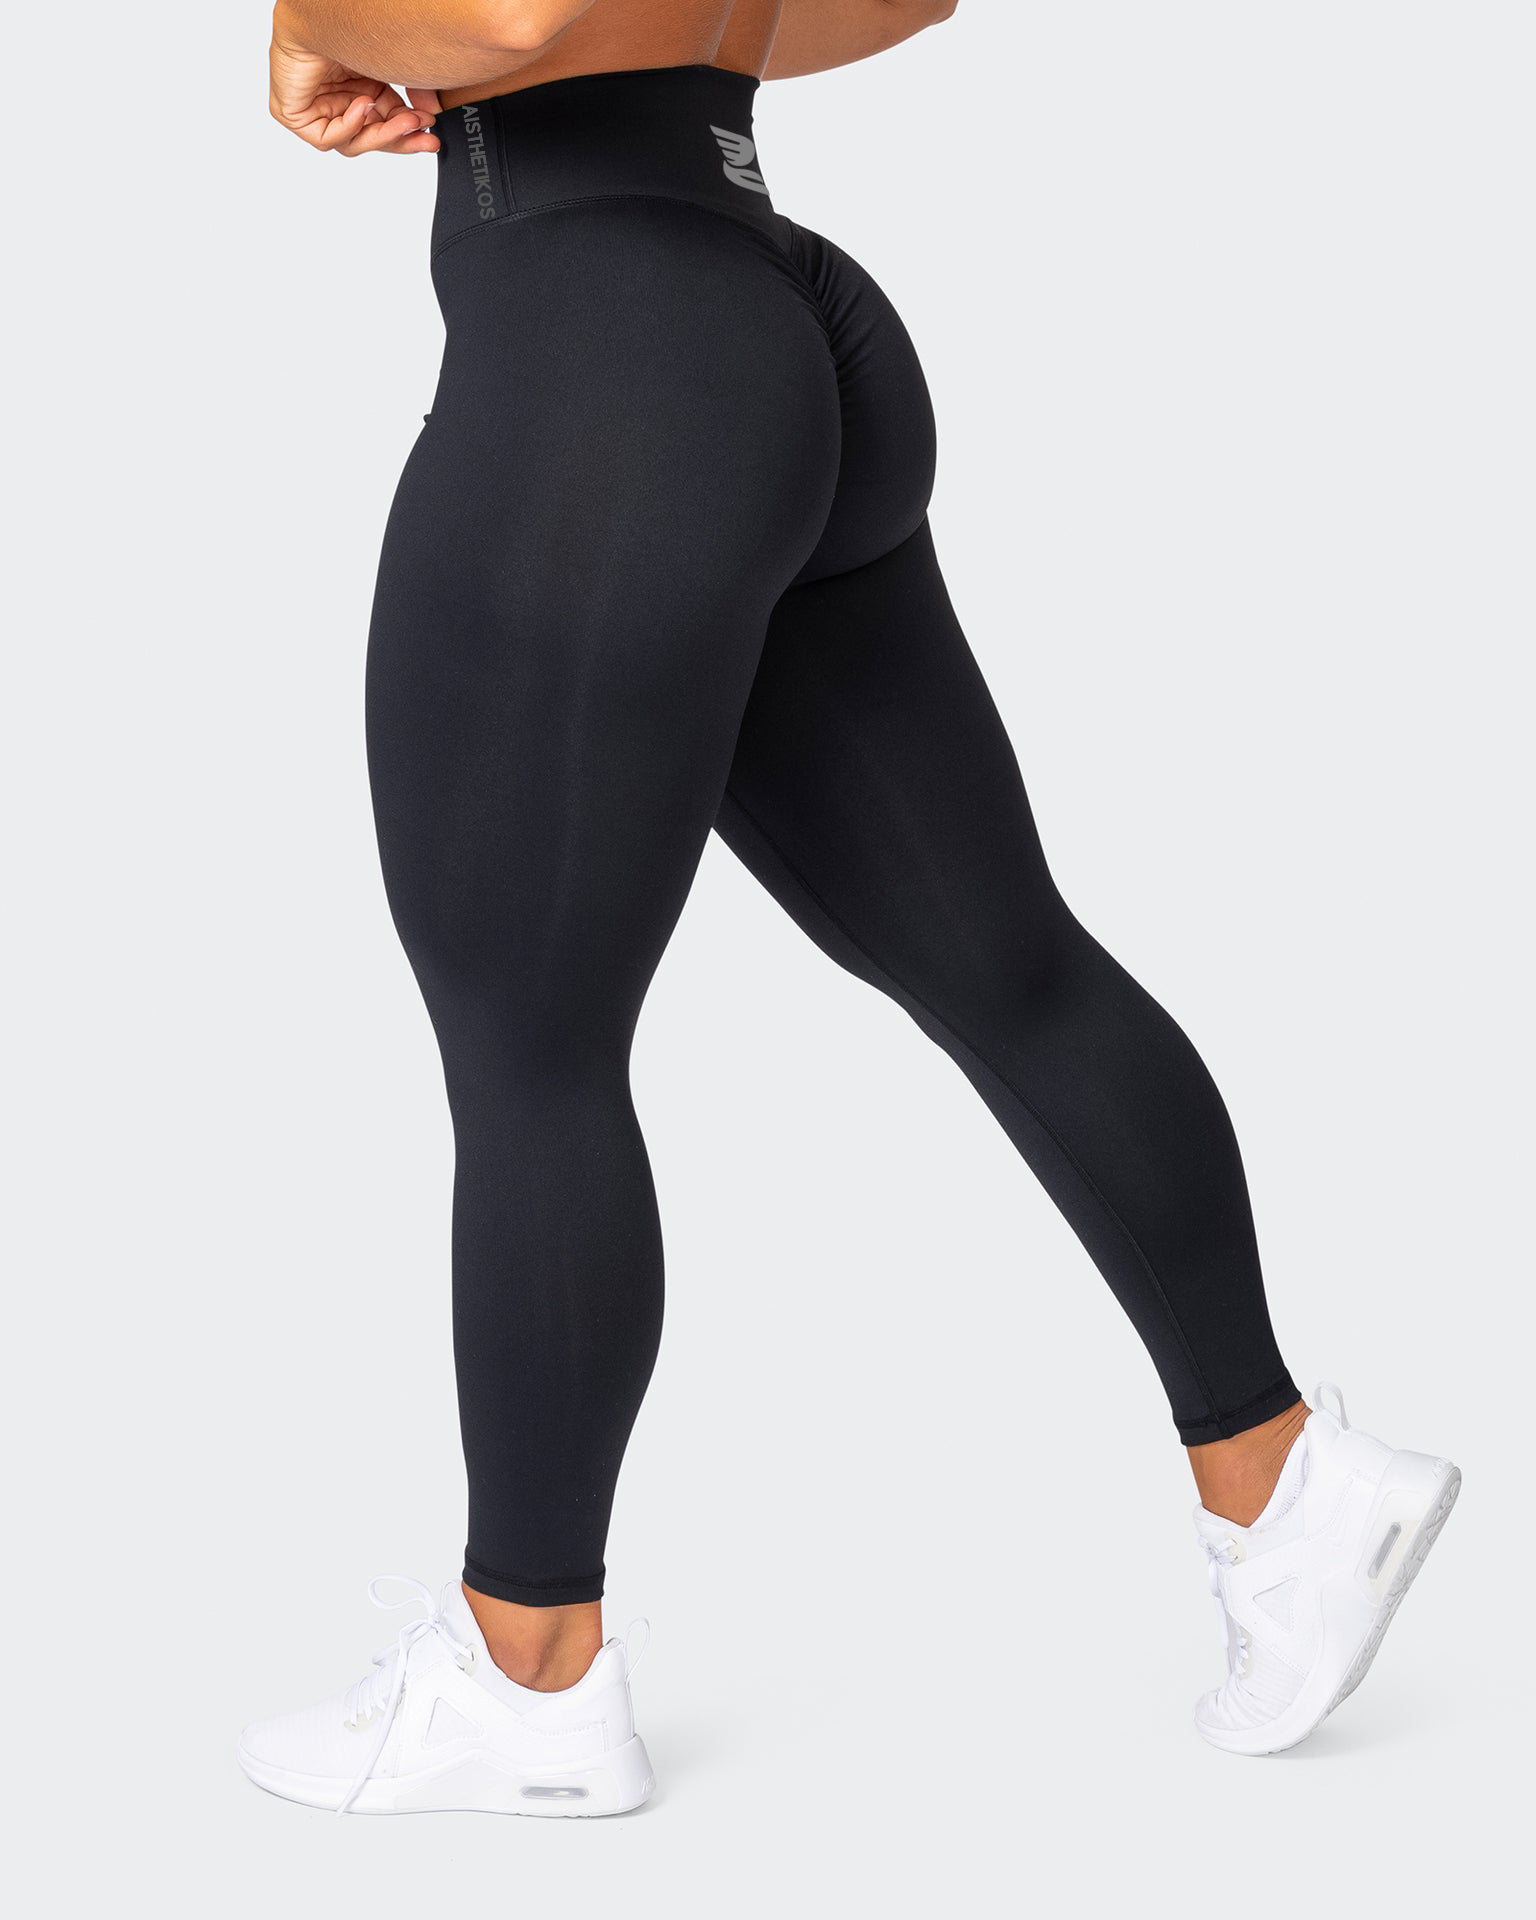 Pockets High Waist Scrunch Butt Leggings • Value Yoga